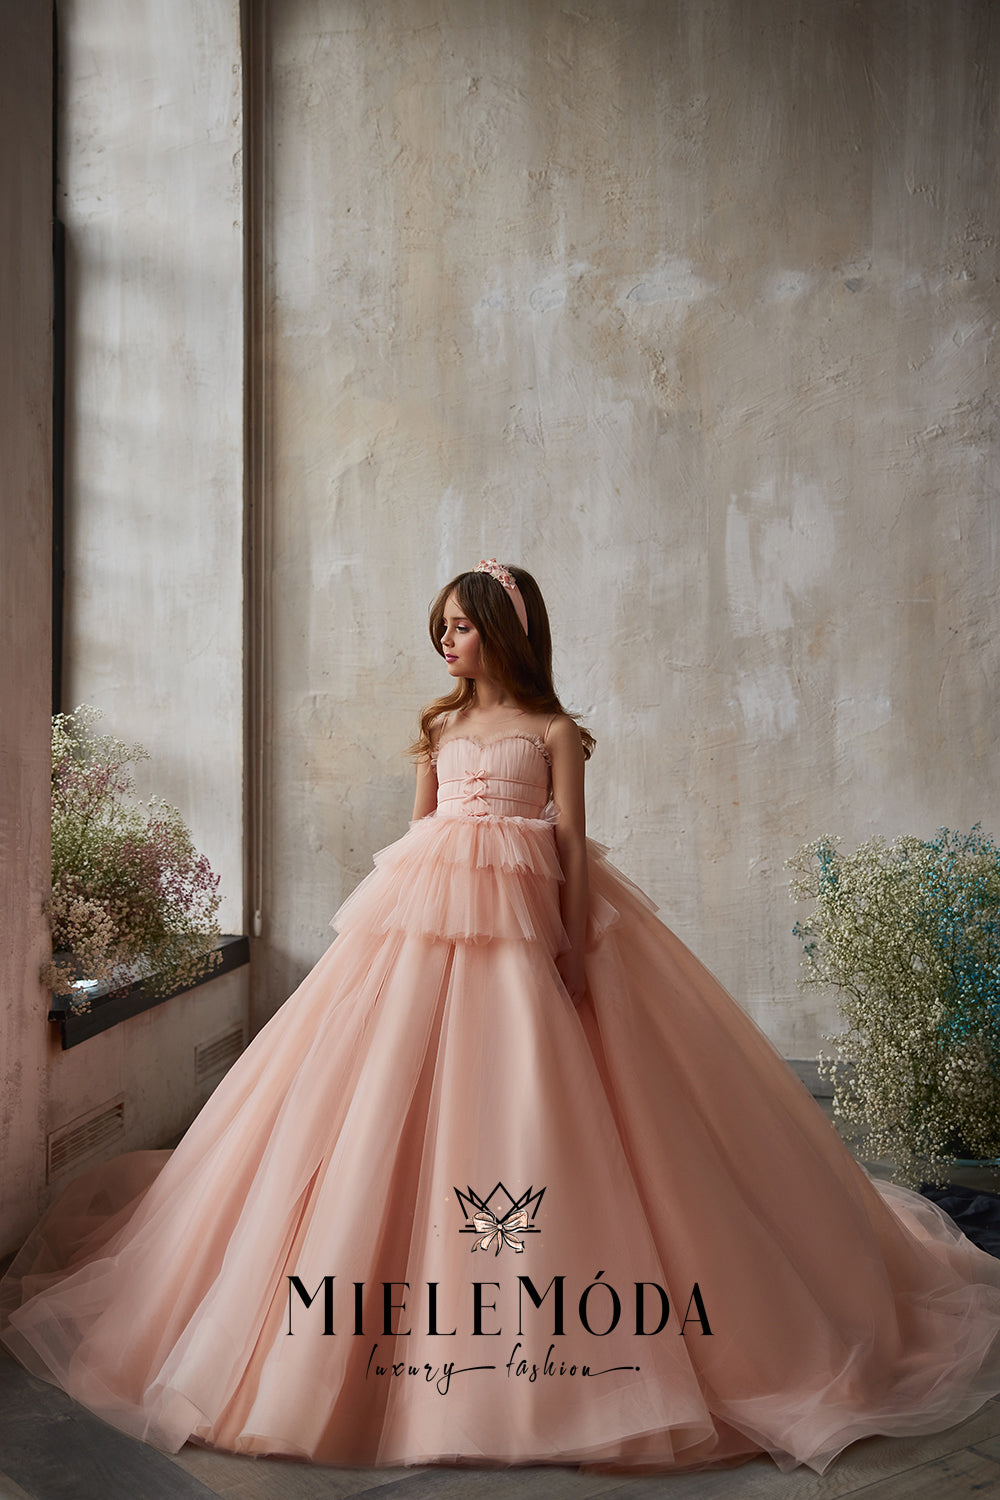 Aurora Couture Princess Birthday Dress - Miele Moda Luxury Fashion House